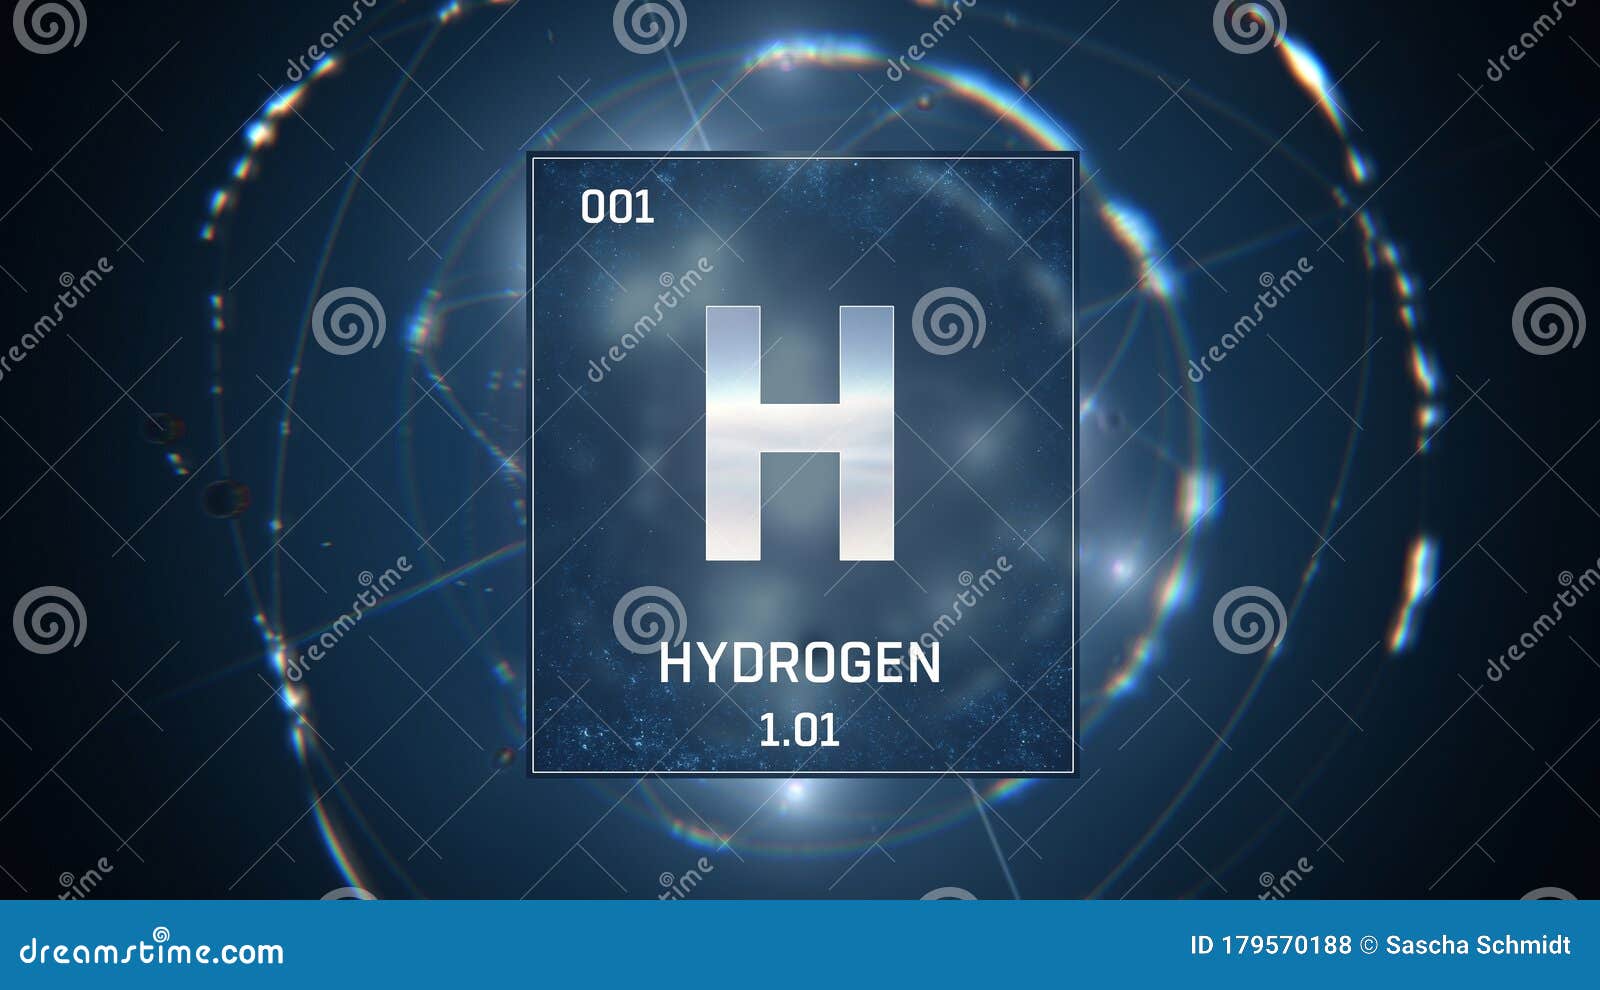 Hydrogen Ppt Background